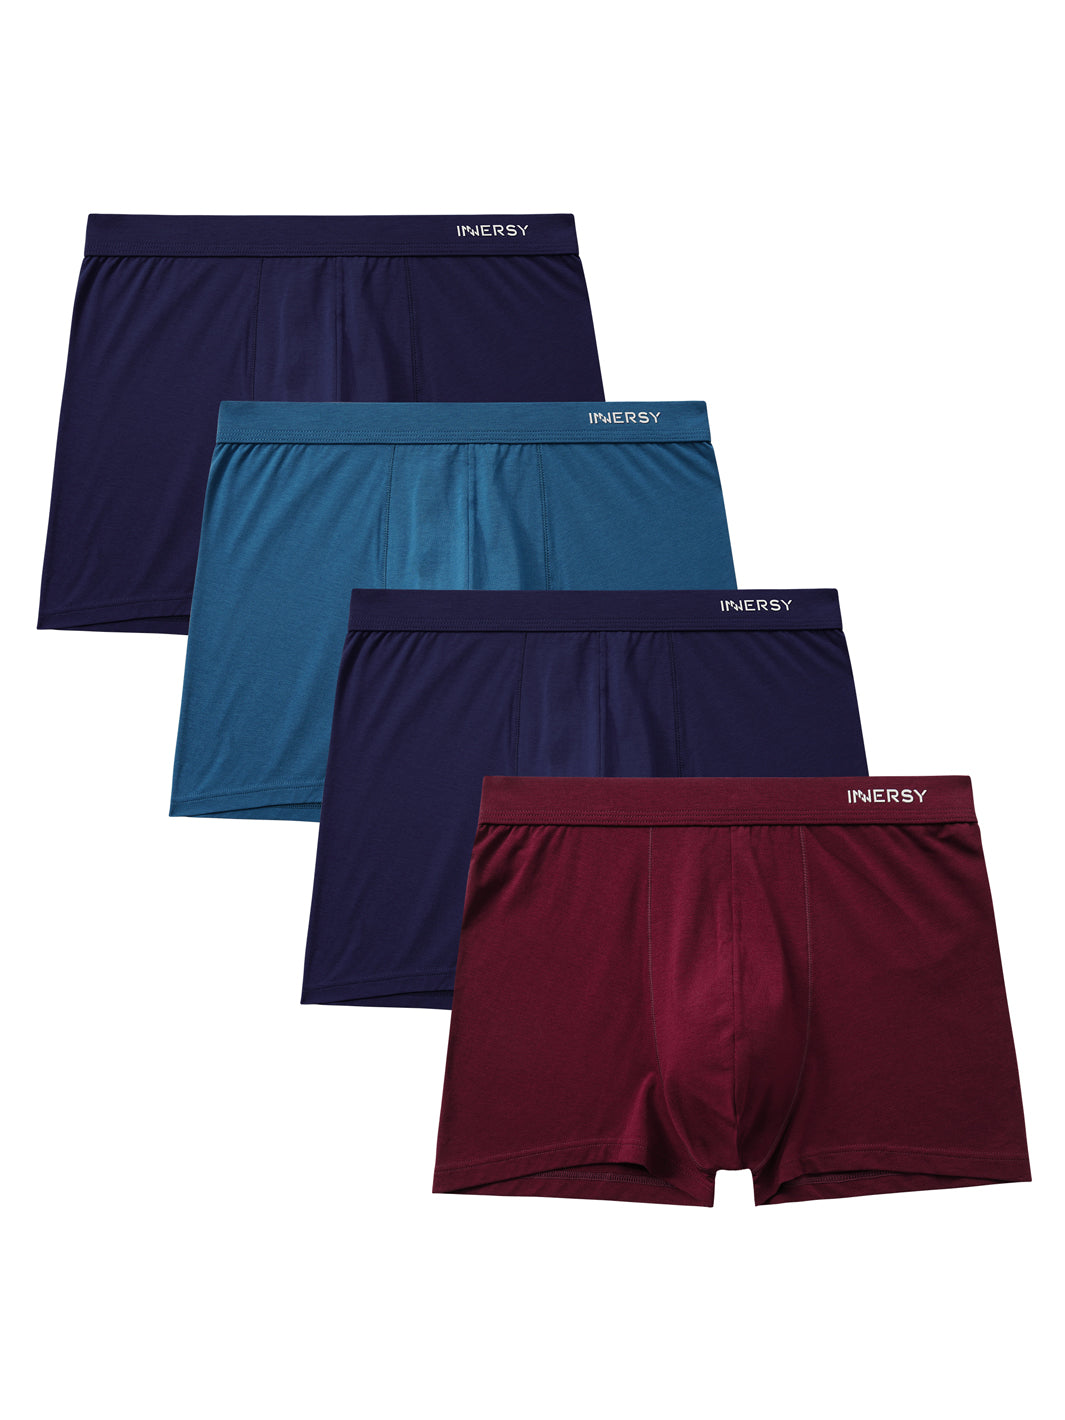 Best Men's Jersey Cotton Boxer Shorts (Multi-Colors) – Hinz Knit